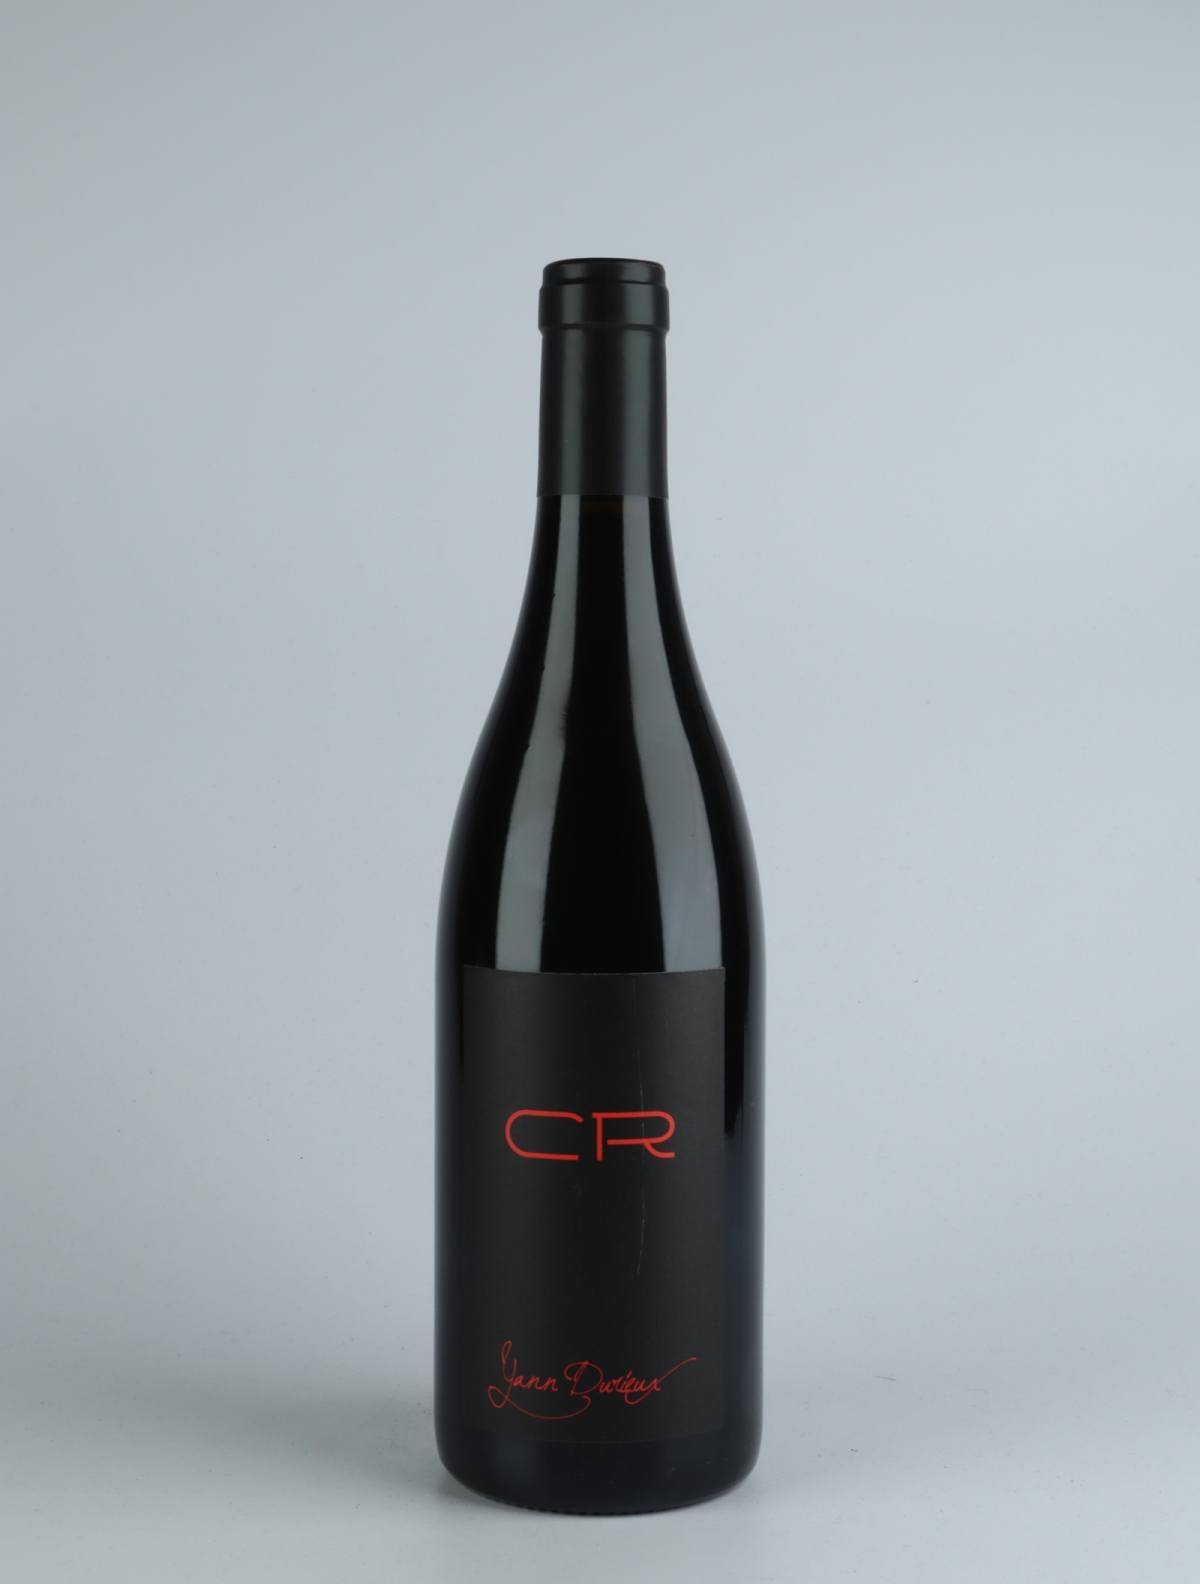 En flaske 2018 CR Rødvin fra Yann Durieux, Bourgogne i Frankrig